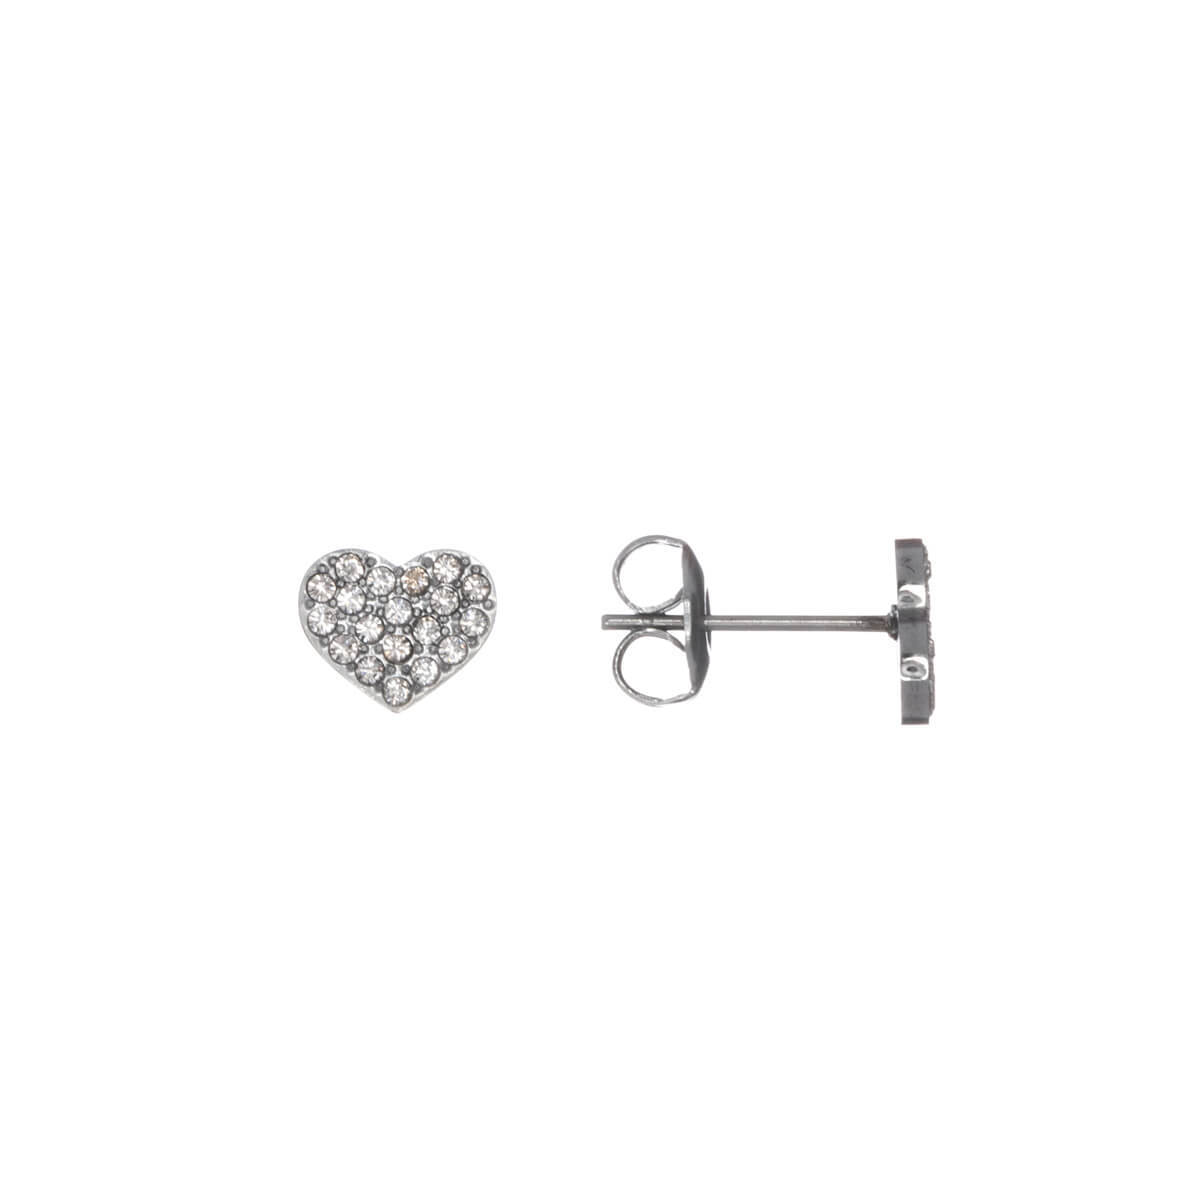 Stone heart earrings (steel 316L)